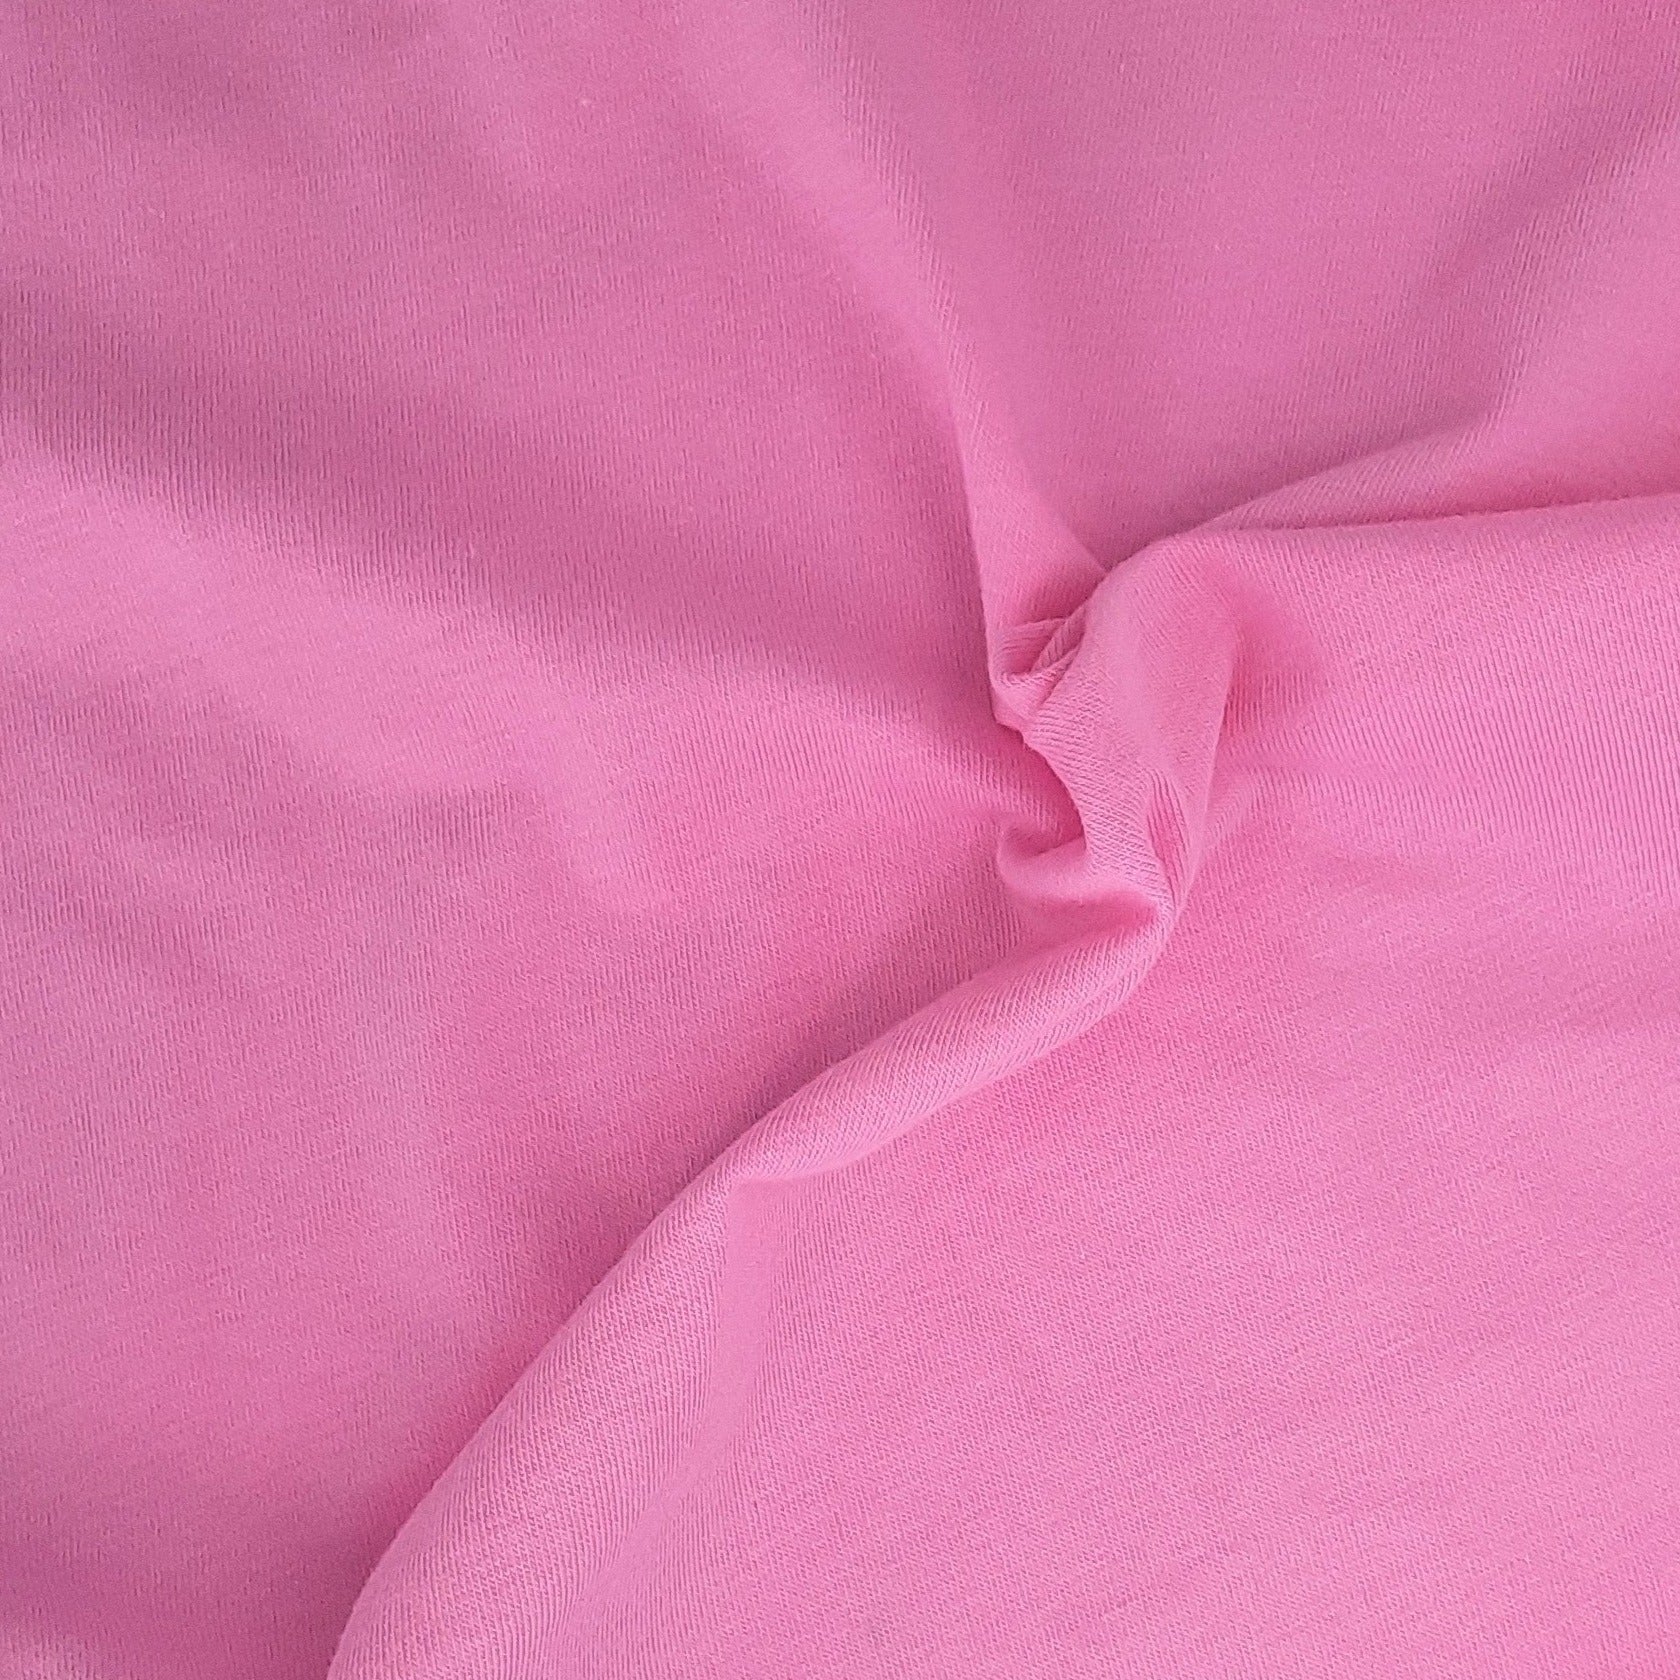 Pink #S63 8oz. Cotton/Lycra Jersey Knit Fabric - SKU 6827B